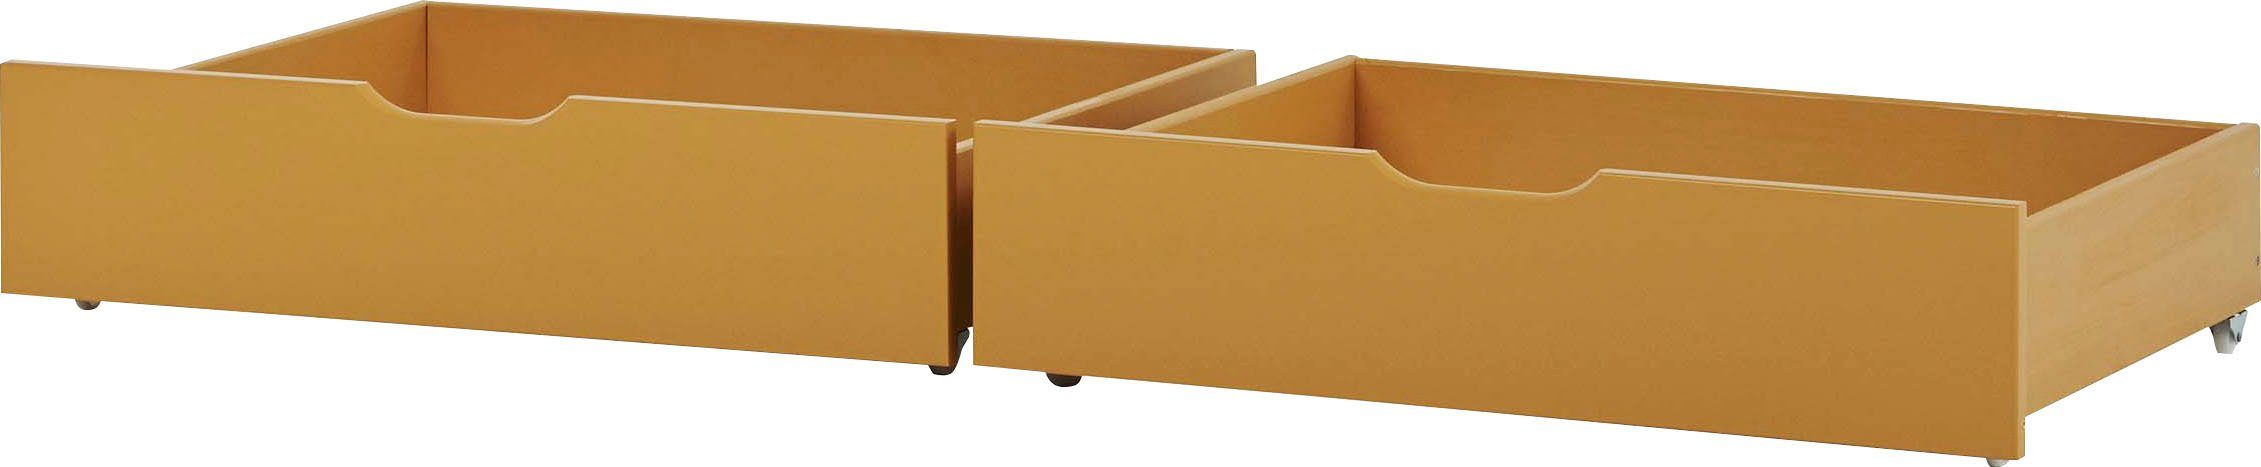 Neu eingetroffen Hoppekids Bettschubkasten ECO Comfort (2 2 7 gelb St. in St), Farben auf Rollen erhältlich